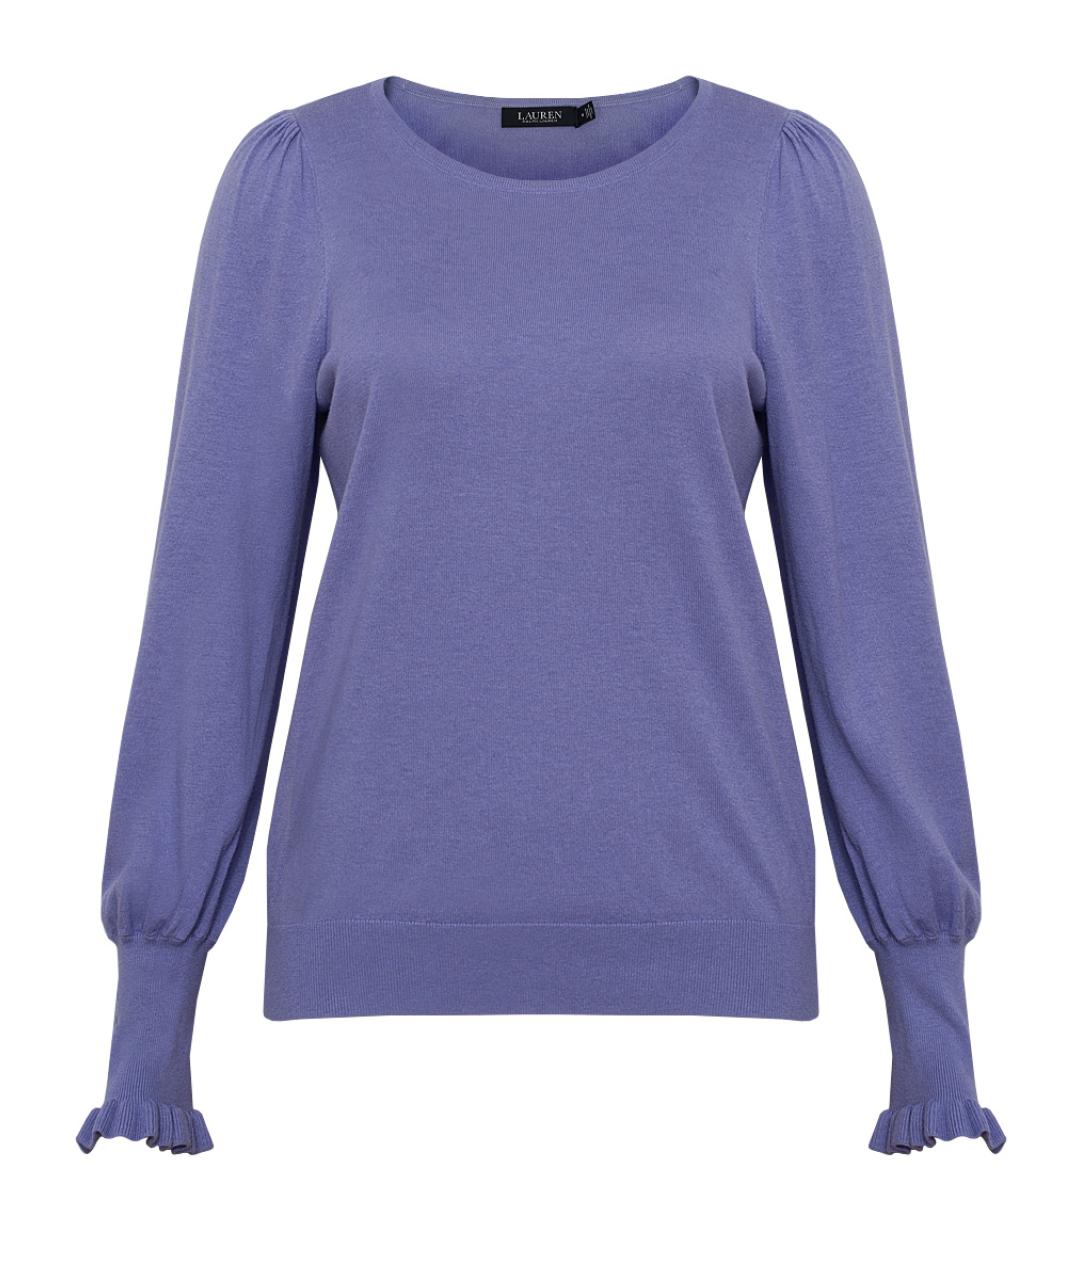 RALPH LAUREN COLLECTION Фиолетовый хлопковый джемпер / свитер, фото 1